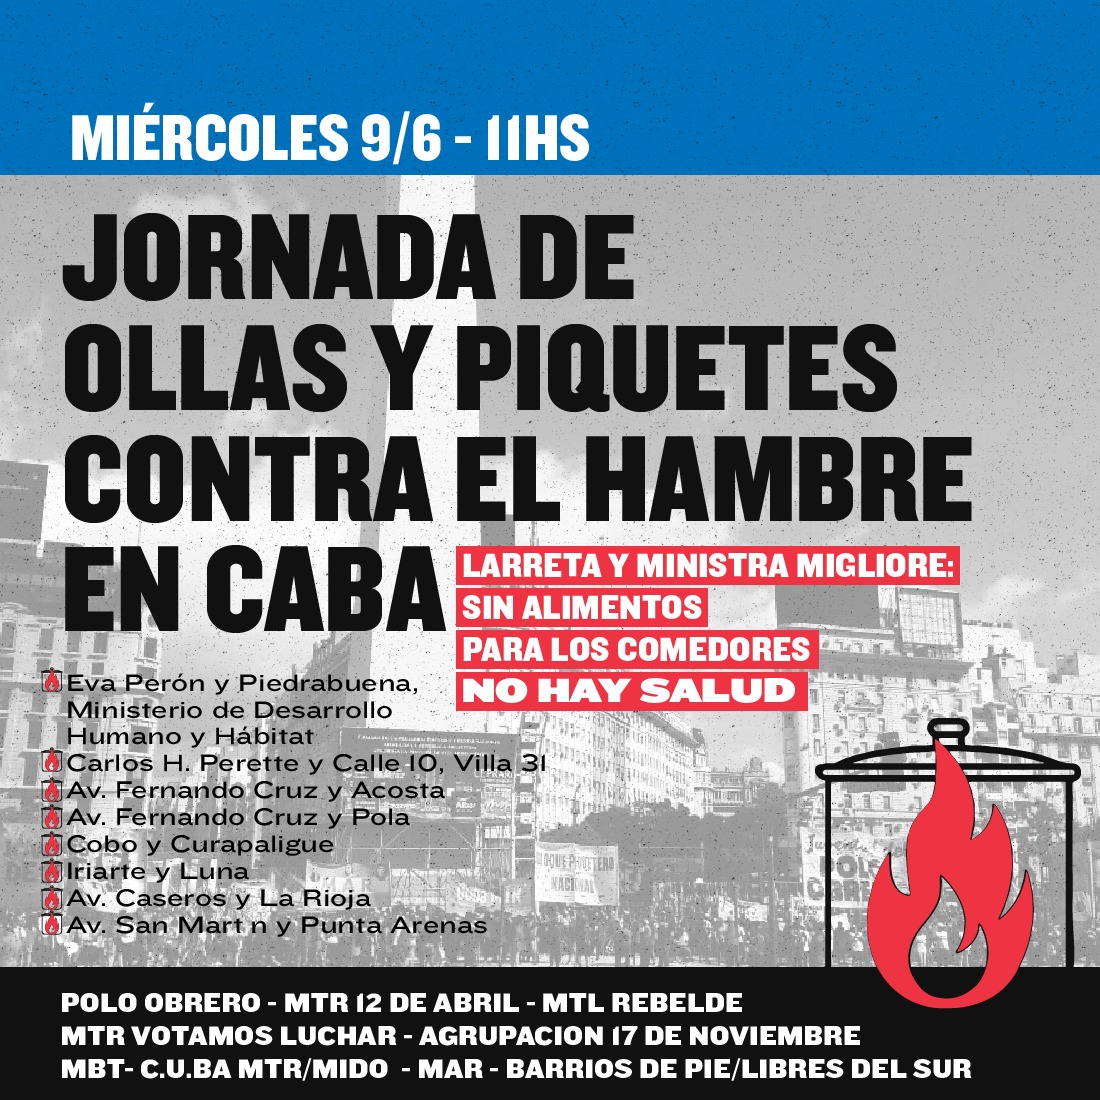 Miércoles 11h Jornada de Ollas y Piquetes contra el hambre en la Ciudad